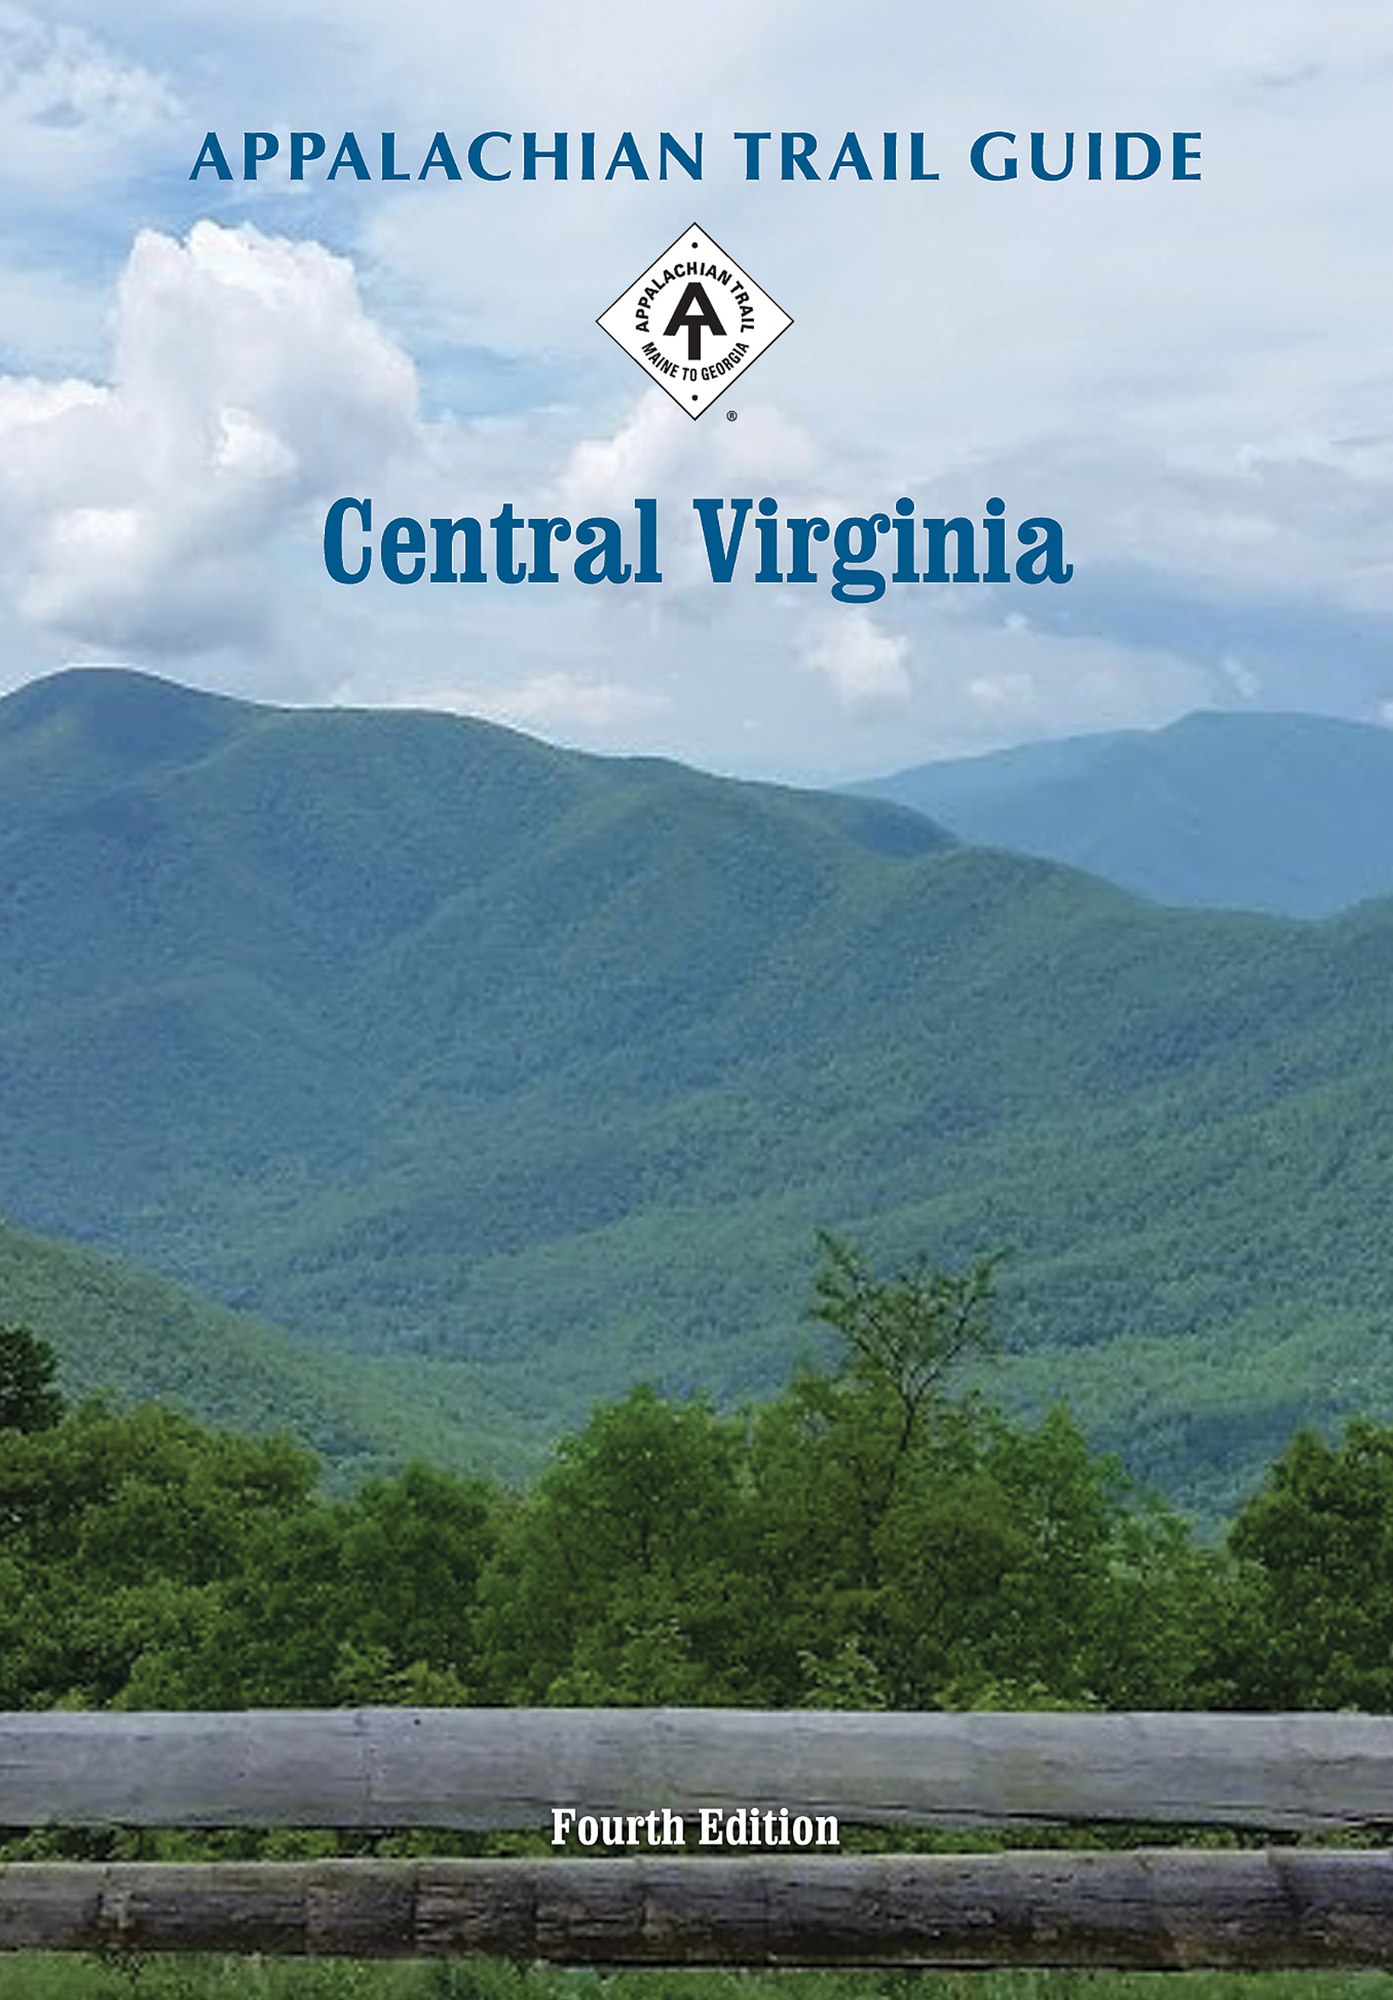 Appalachian Trail Map Through Virginia 